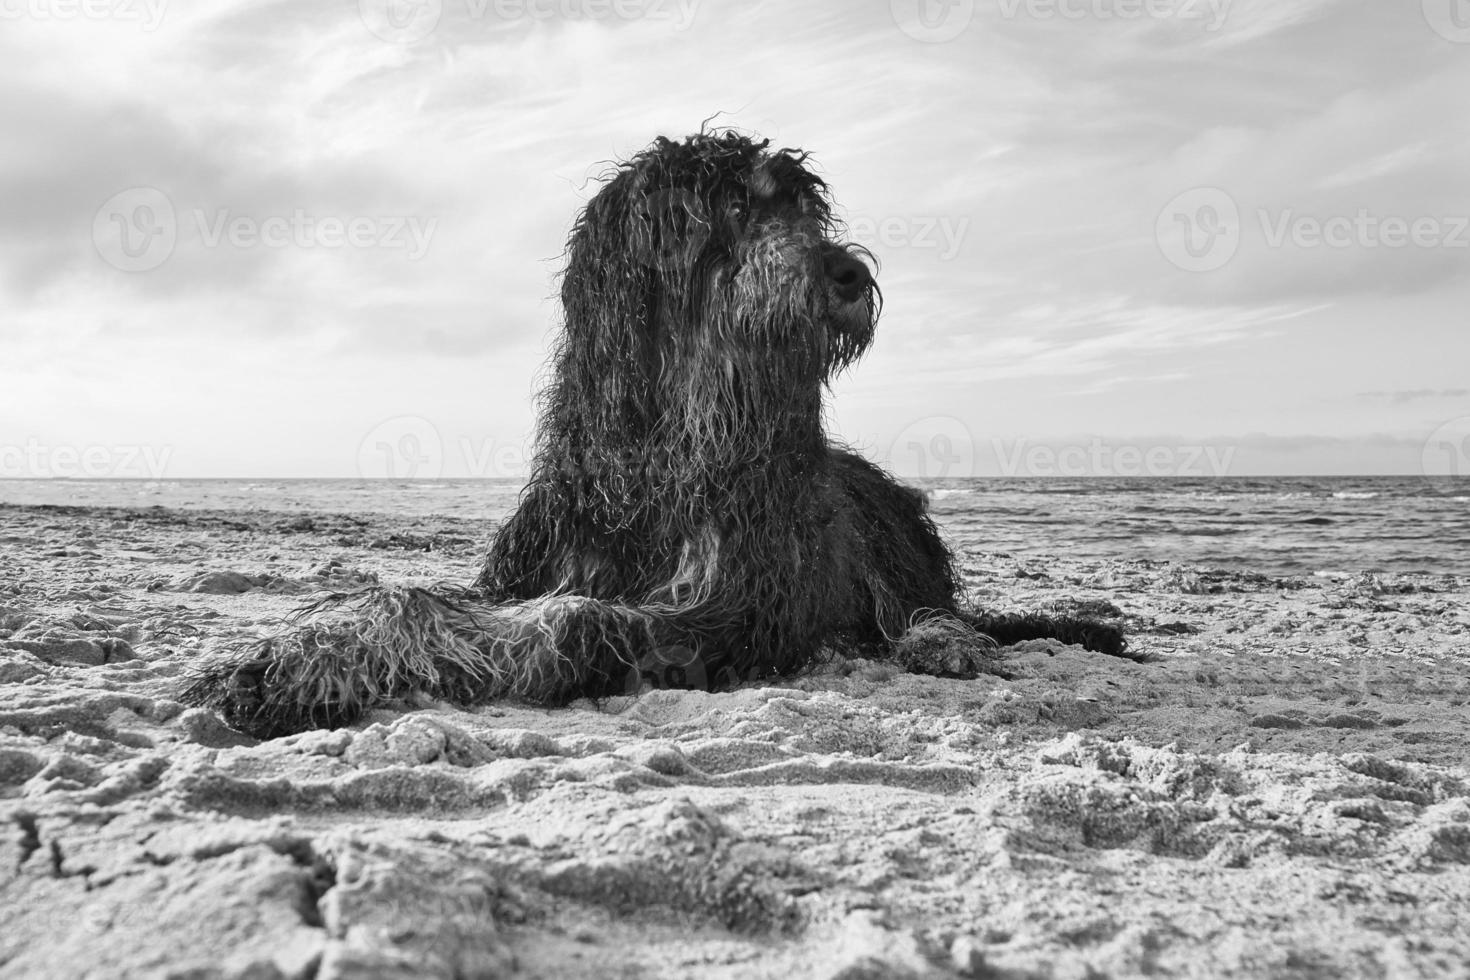 goldendoodle en blanco y negro, tumbado en la arena de la playa en dinamarca foto